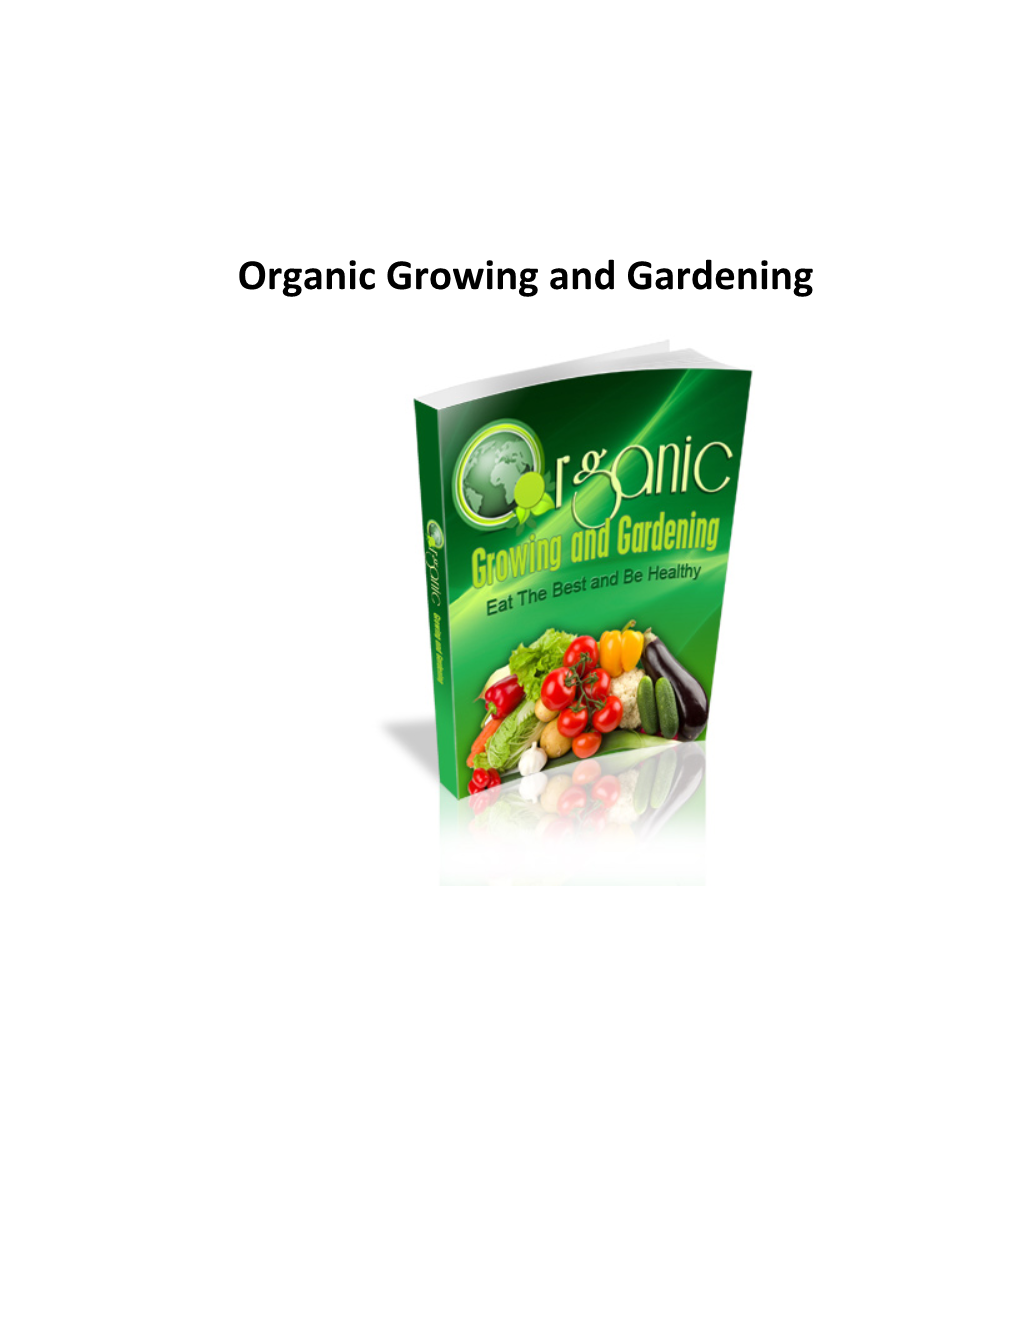 Organic Gardening?